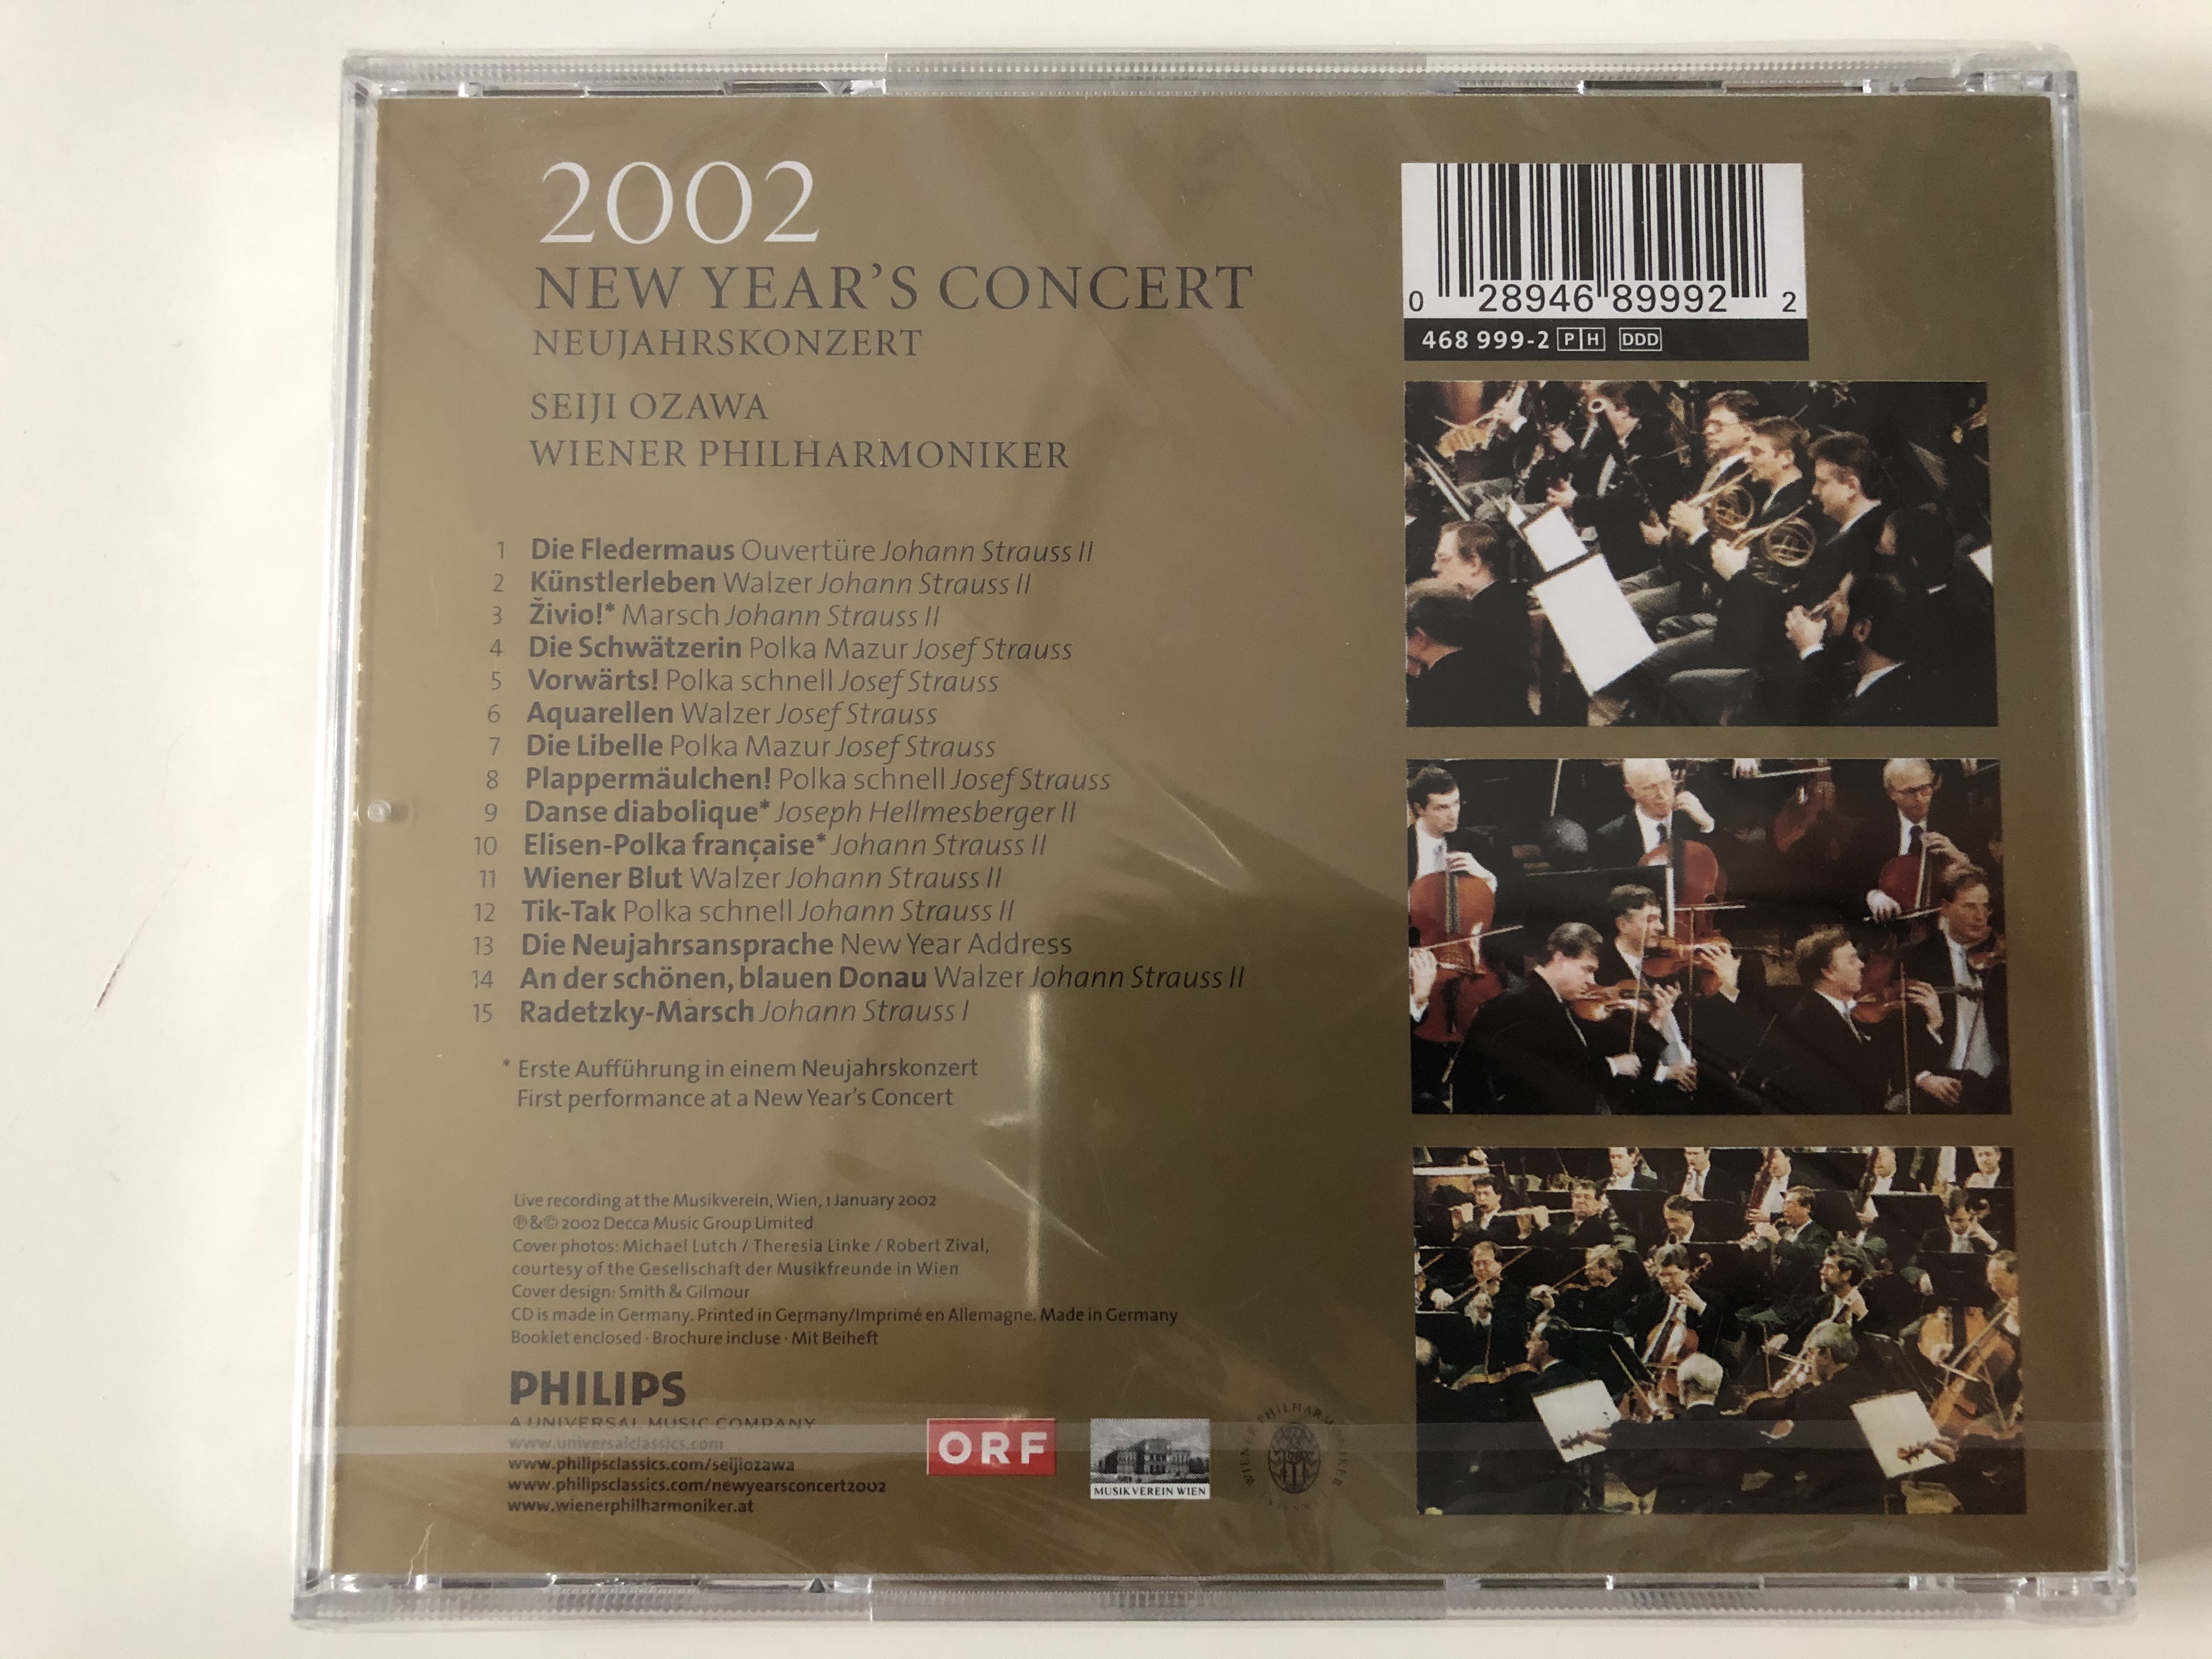 new-year-s-concert-2002-neujahrskonzert-2002-seiji-ozawa-wiener-philharmoniker-philips-audio-cd-2002-468-999-2-2-.jpg